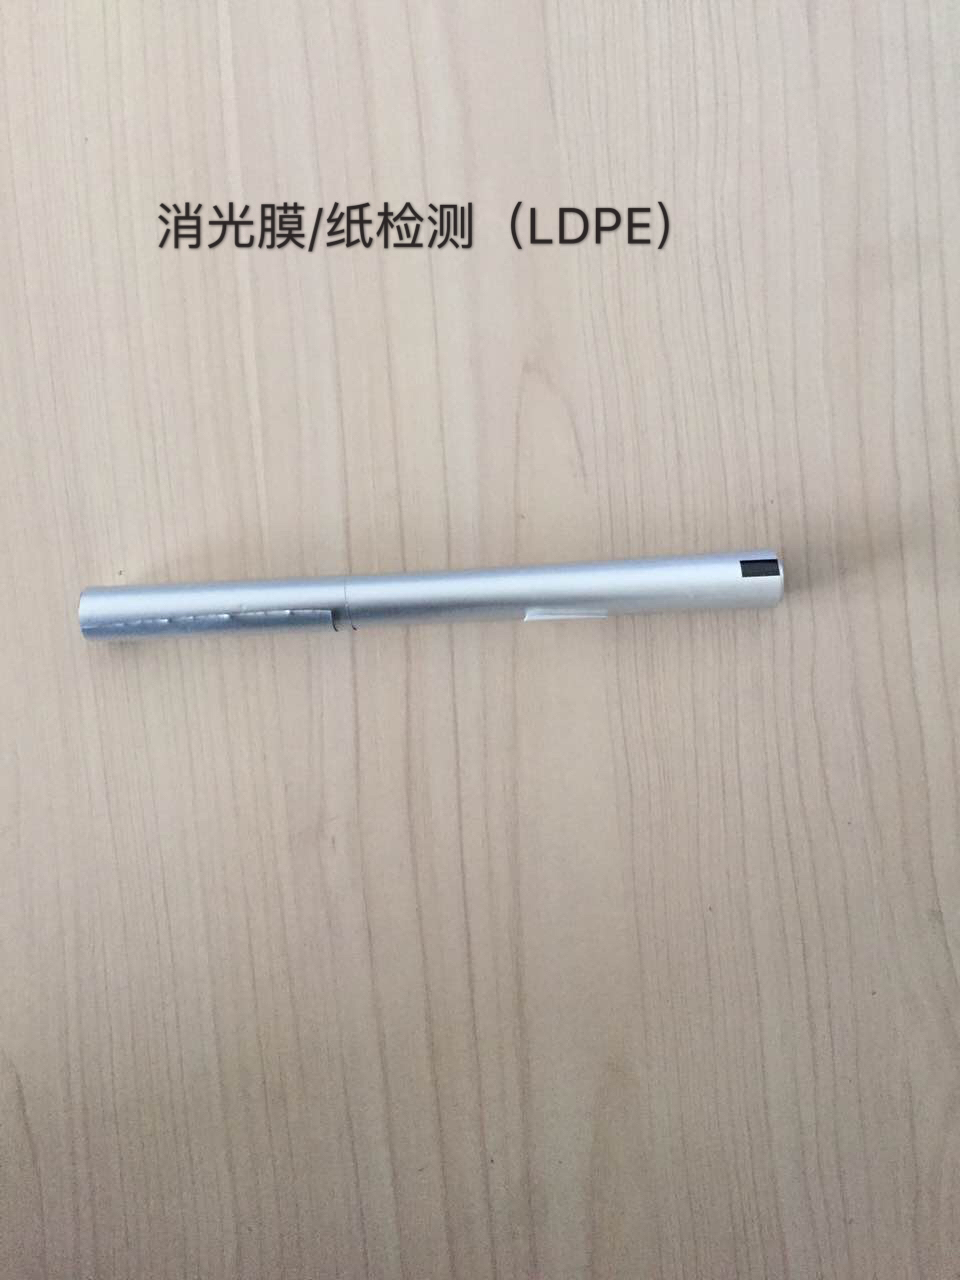 食品包装消光膜消光纸LDPE检测联系电话 杭州食品包装材料检测哪家专业图片